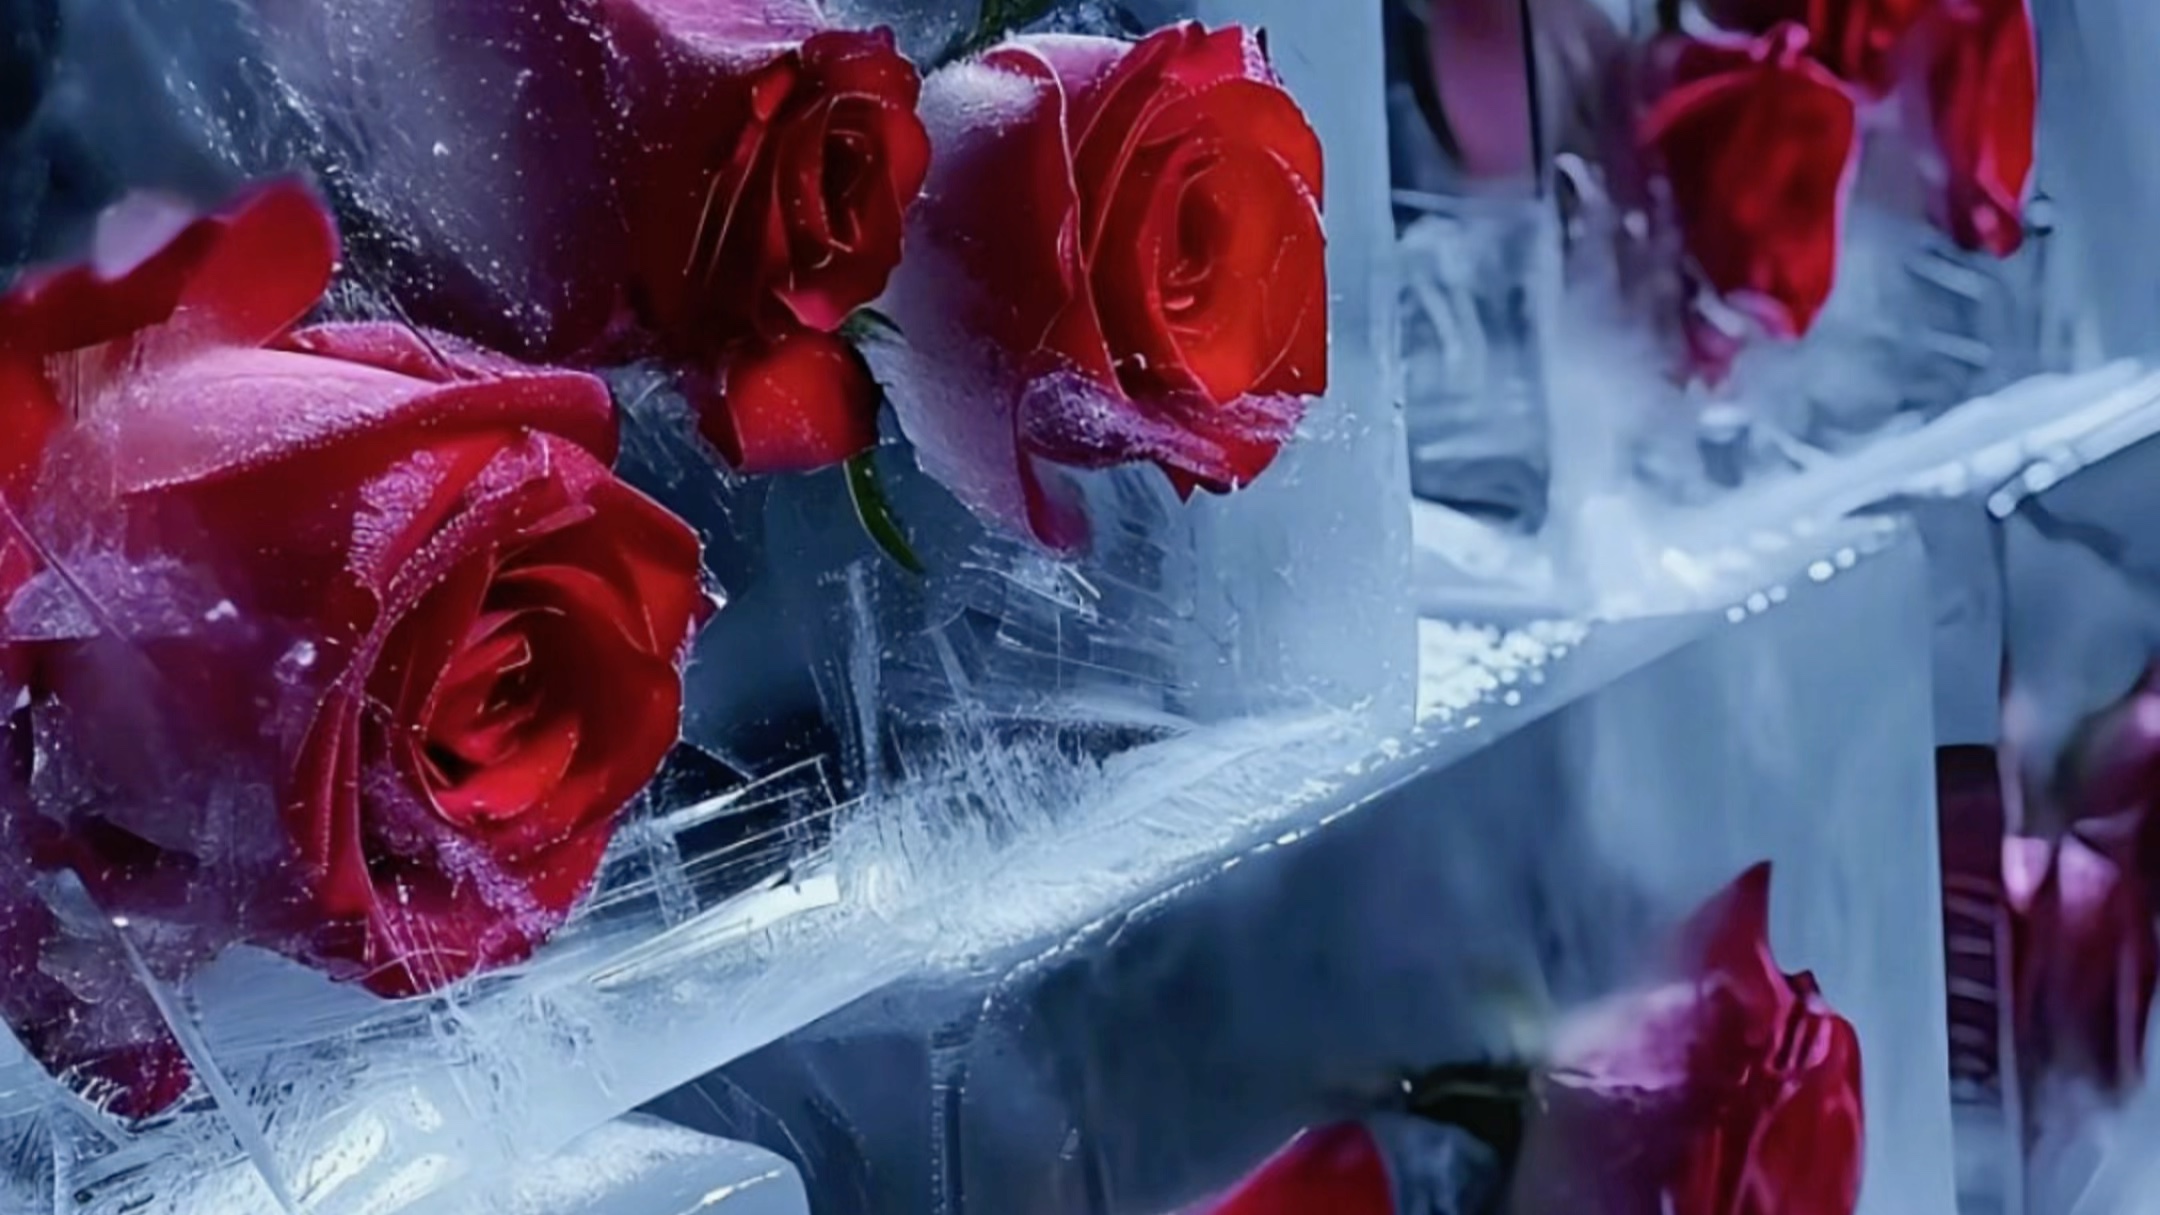 直到看到这冰封玫瑰，啊～是心动啊。哪儿都不用去